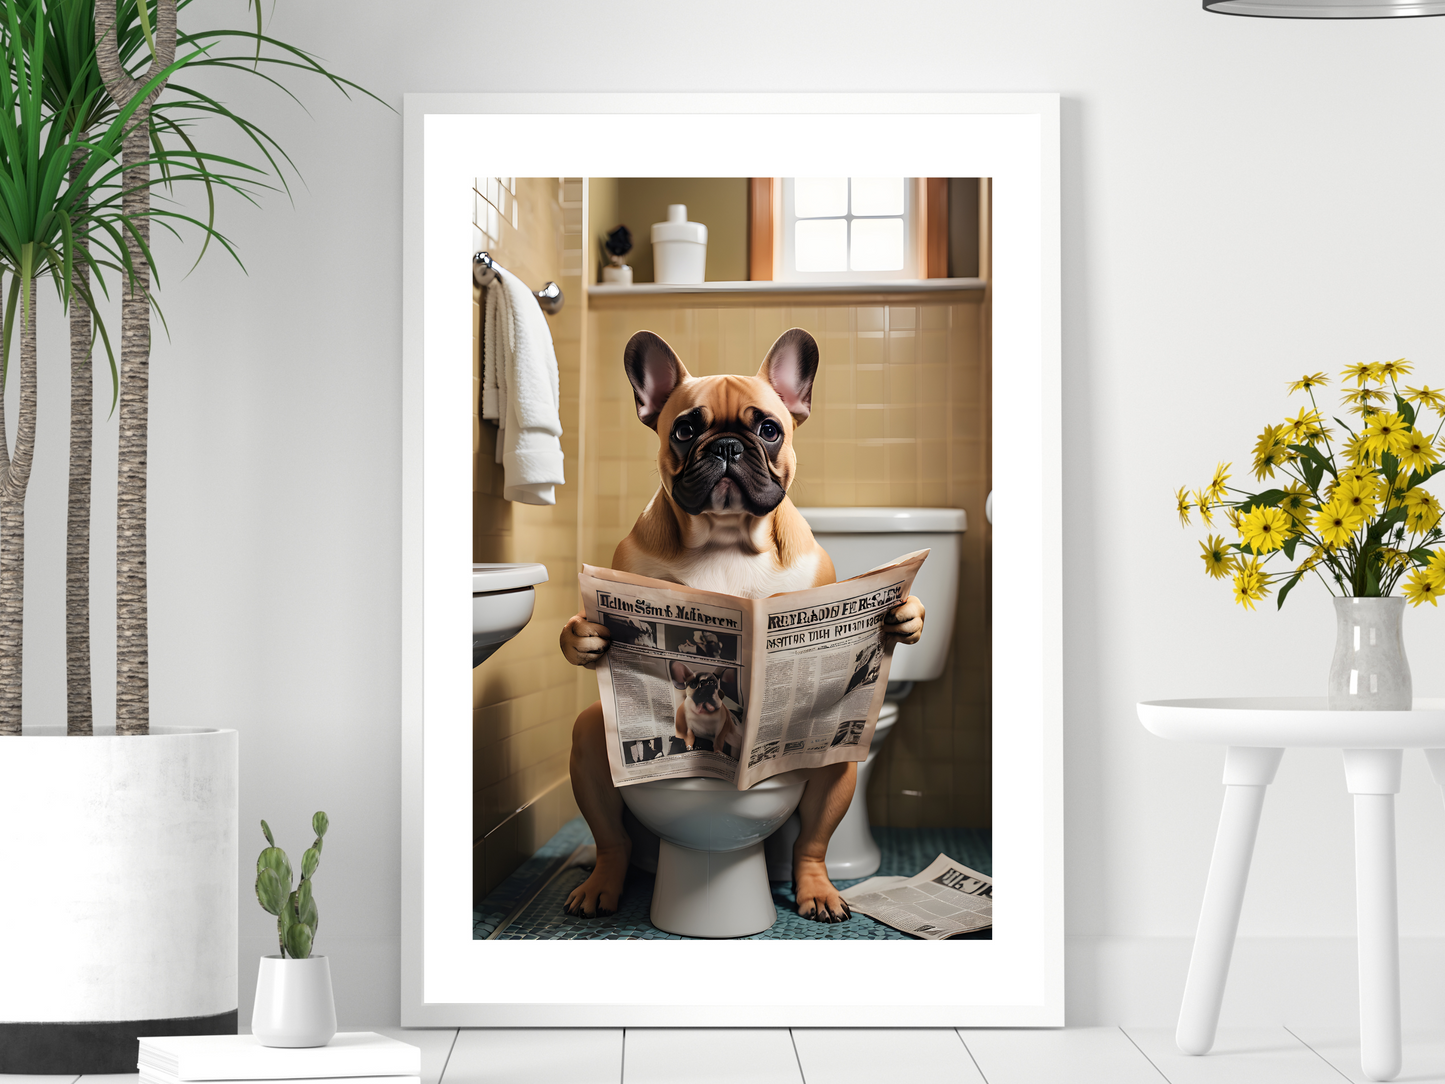 Fawn French Bulldog on Toilet